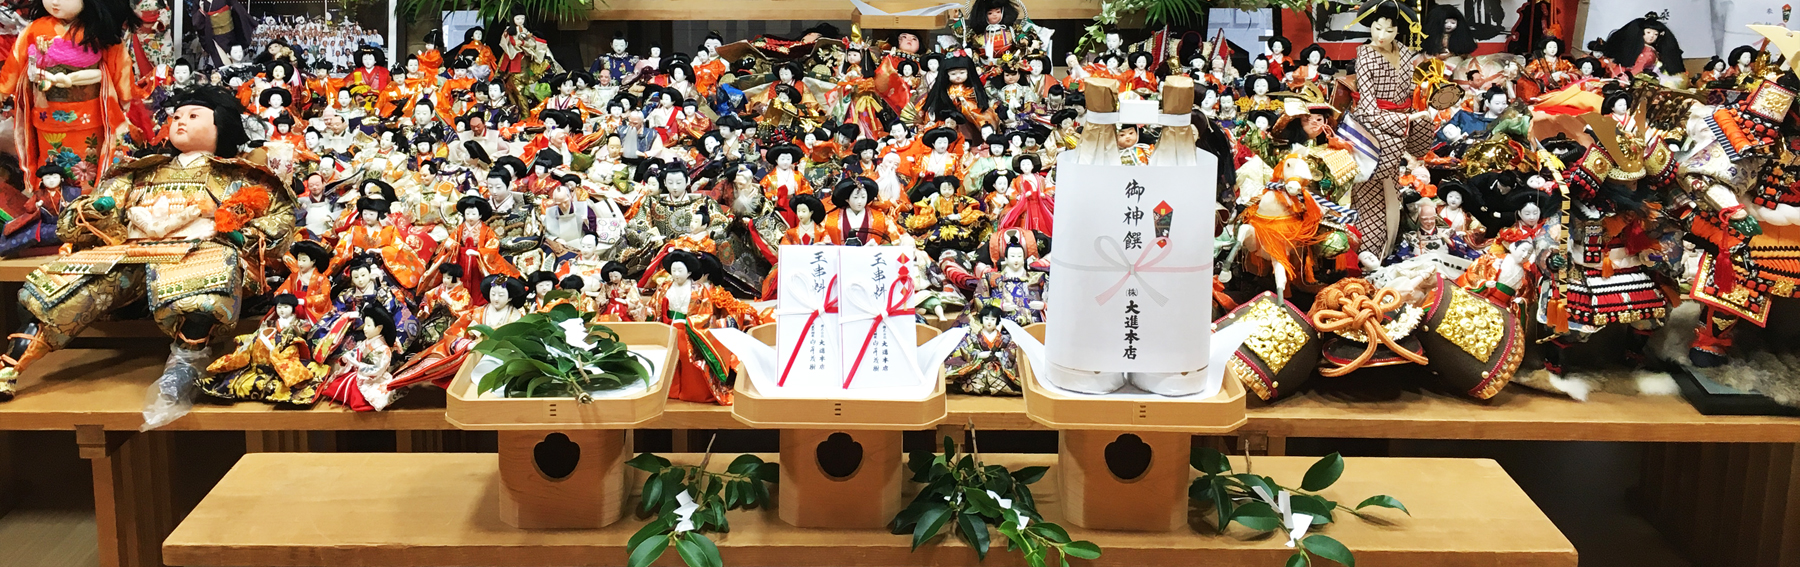 人形供養祭にて祭壇に並ぶ多くの雛人形、日本人形